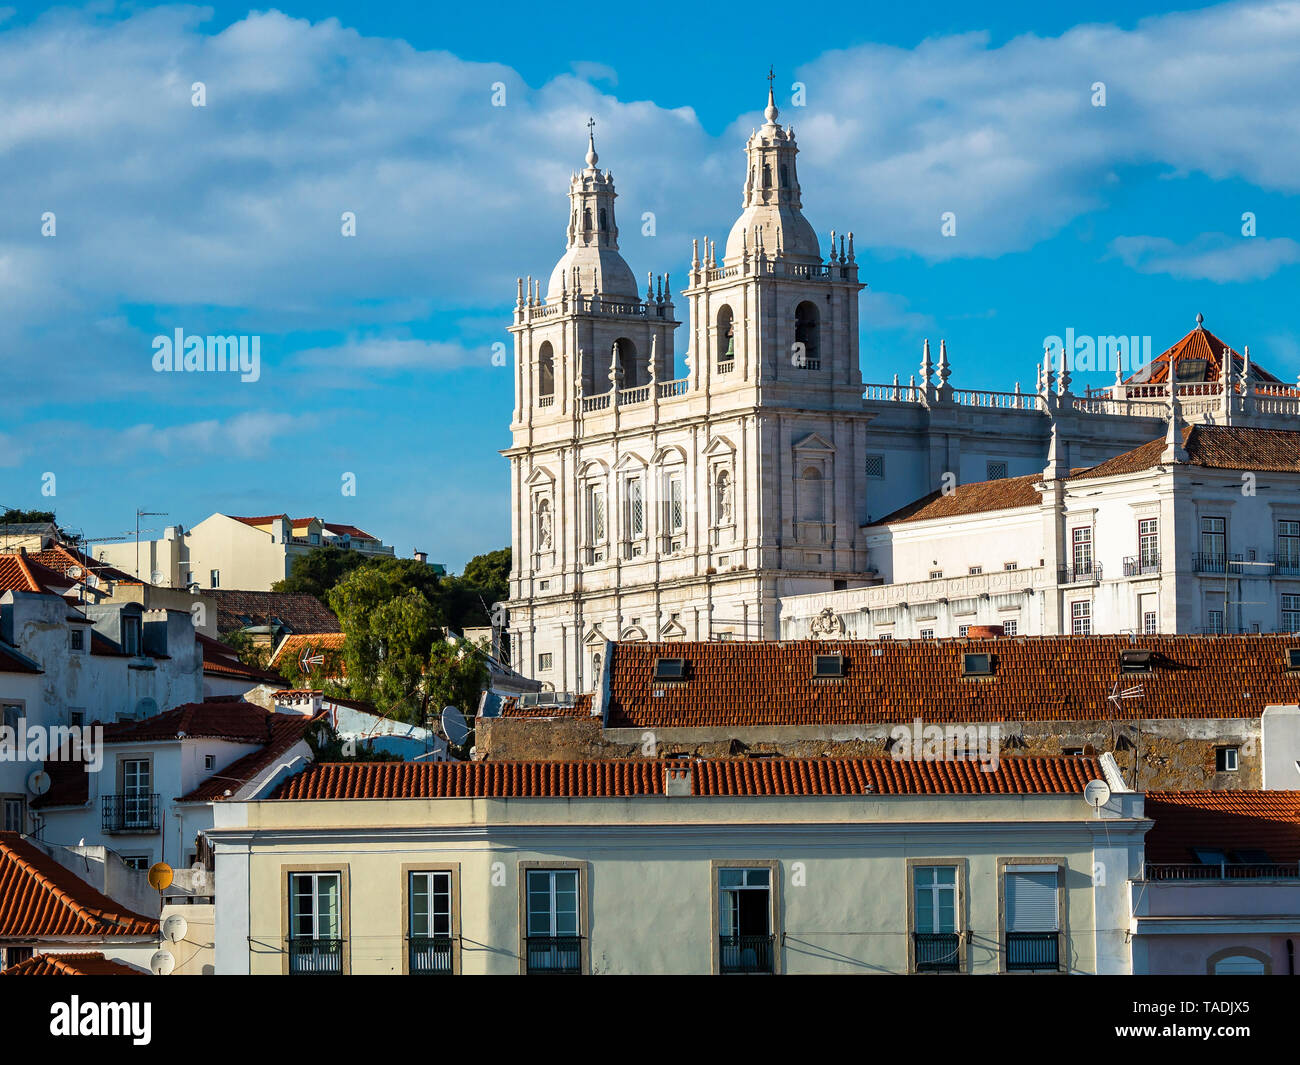 Portugal, Lisbonne, Alfama, vue de Miradouro de Santa Luzia sur district avec le Monastère de São Vicente de Fora Banque D'Images